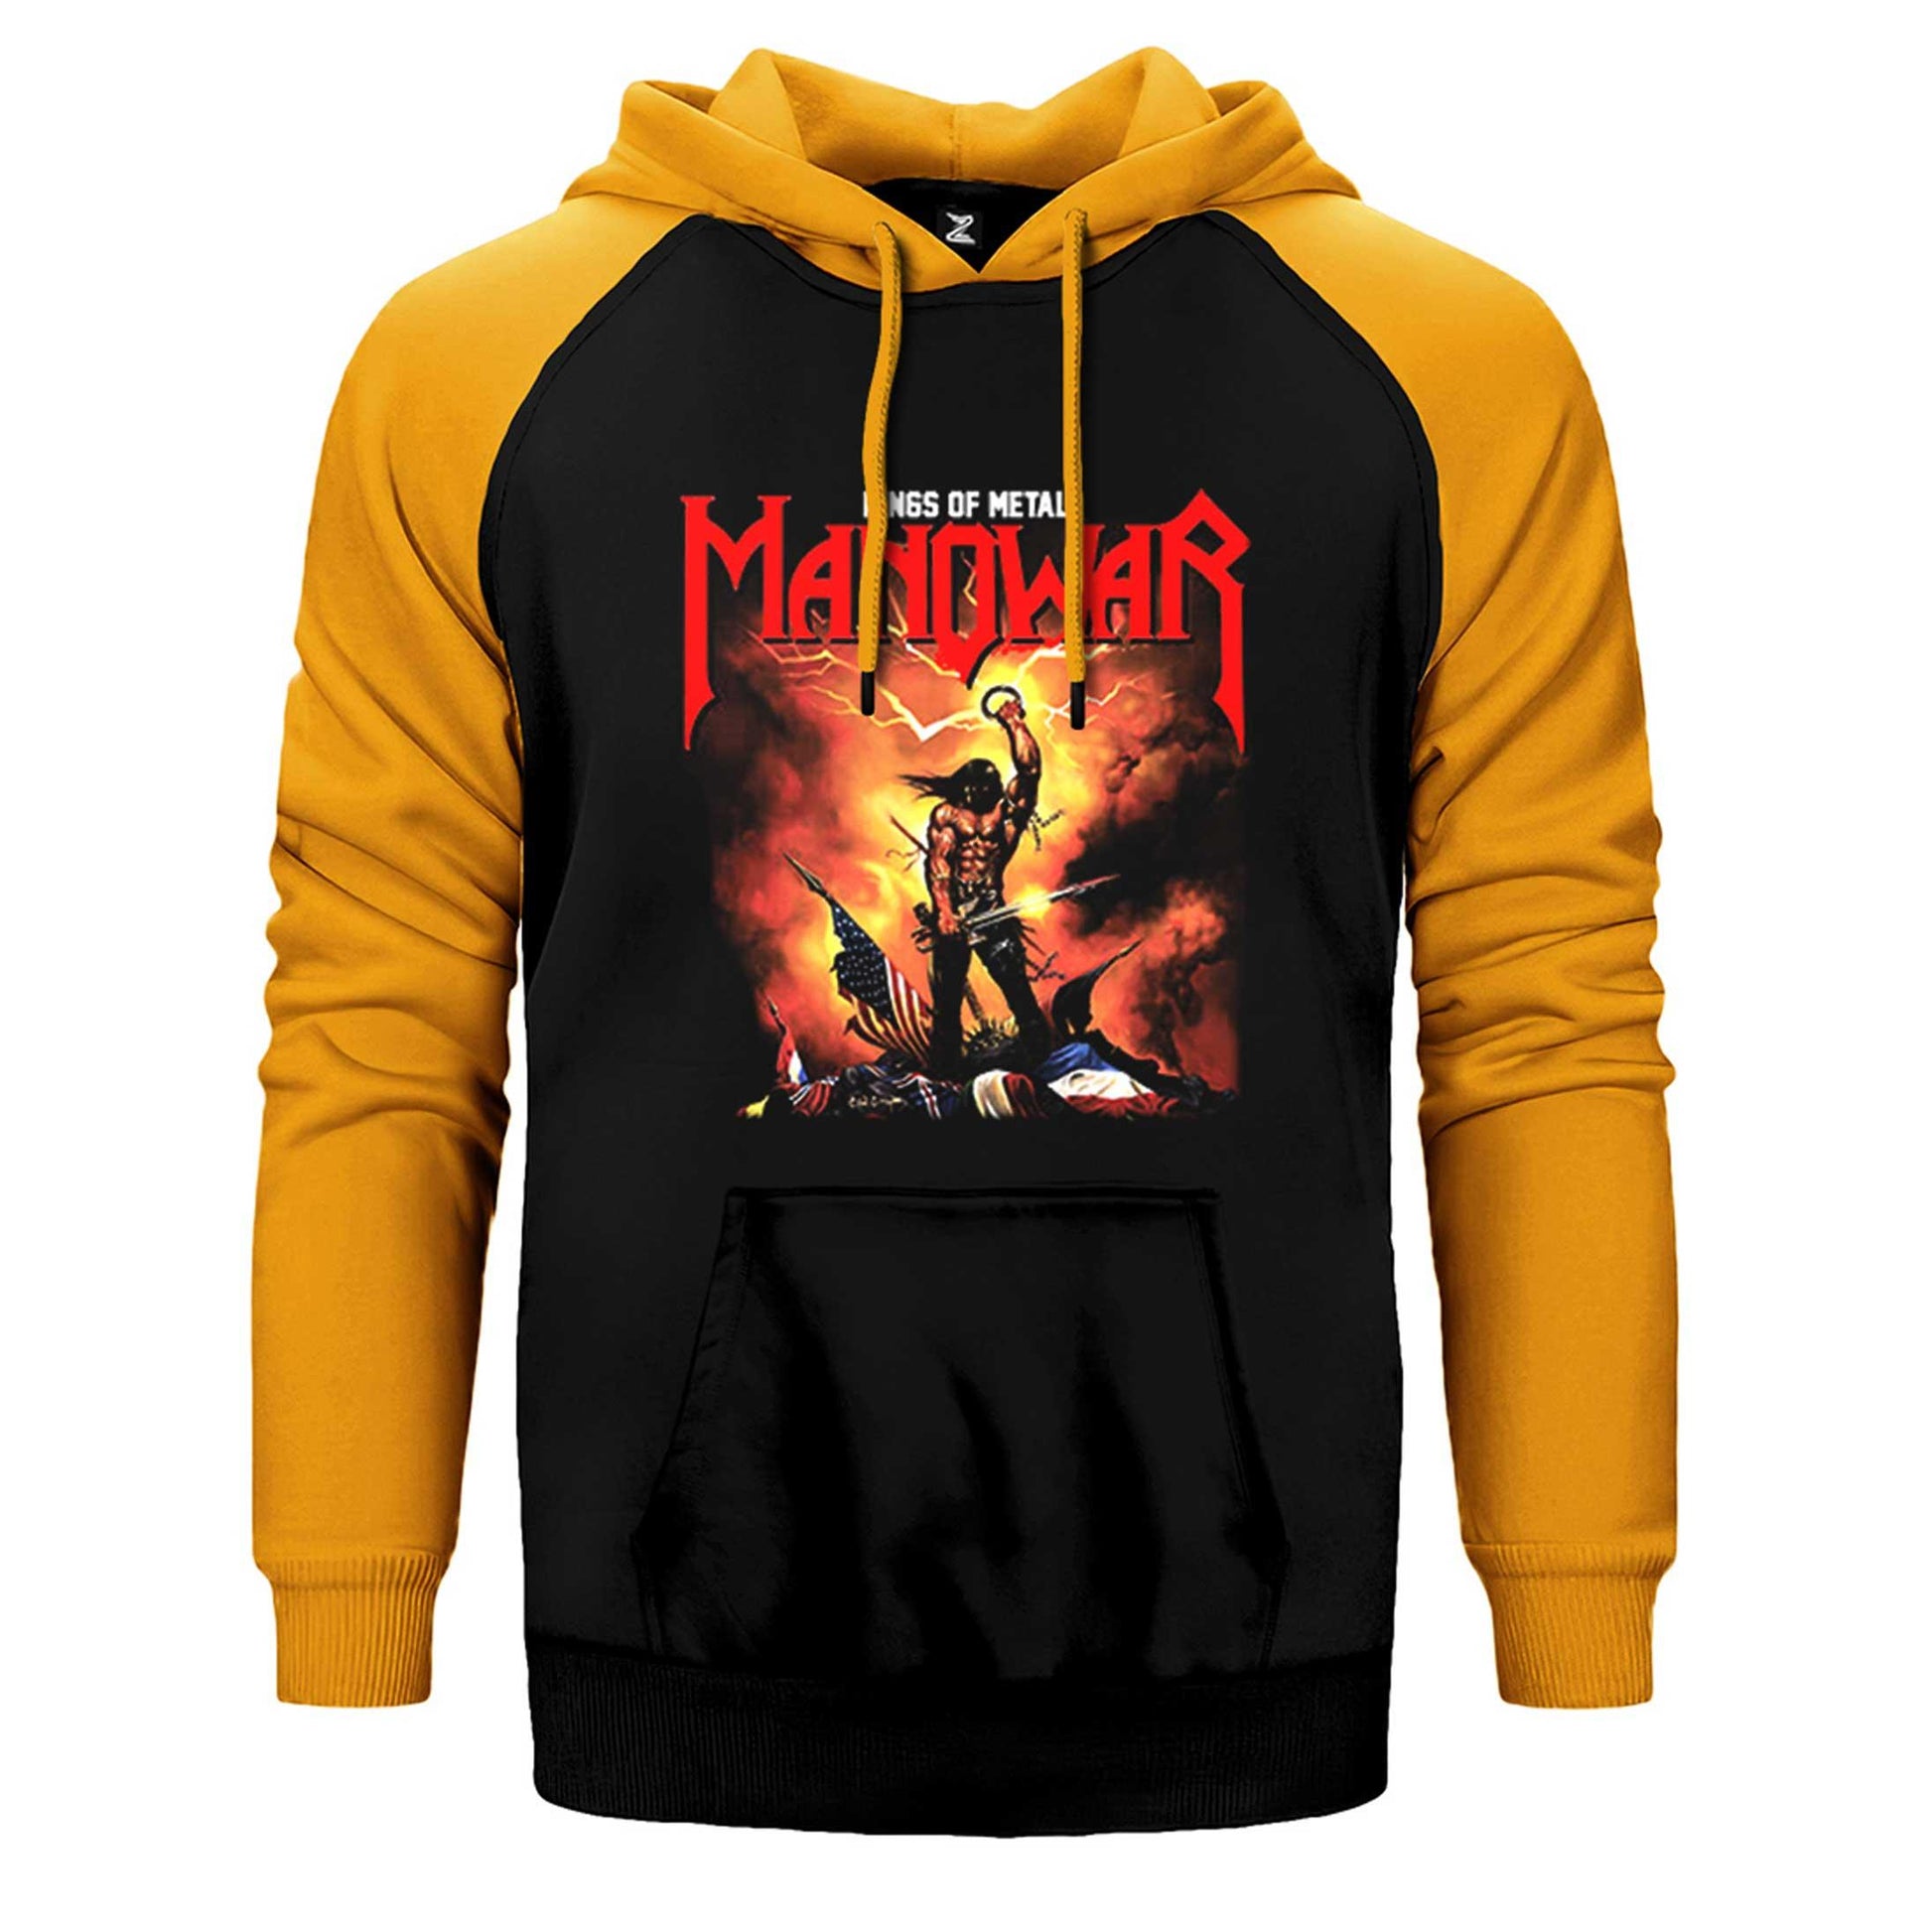 Manowar Kings of Metal Çift Renk Reglan Kol Sweatshirt / Hoodie - Zepplingiyim